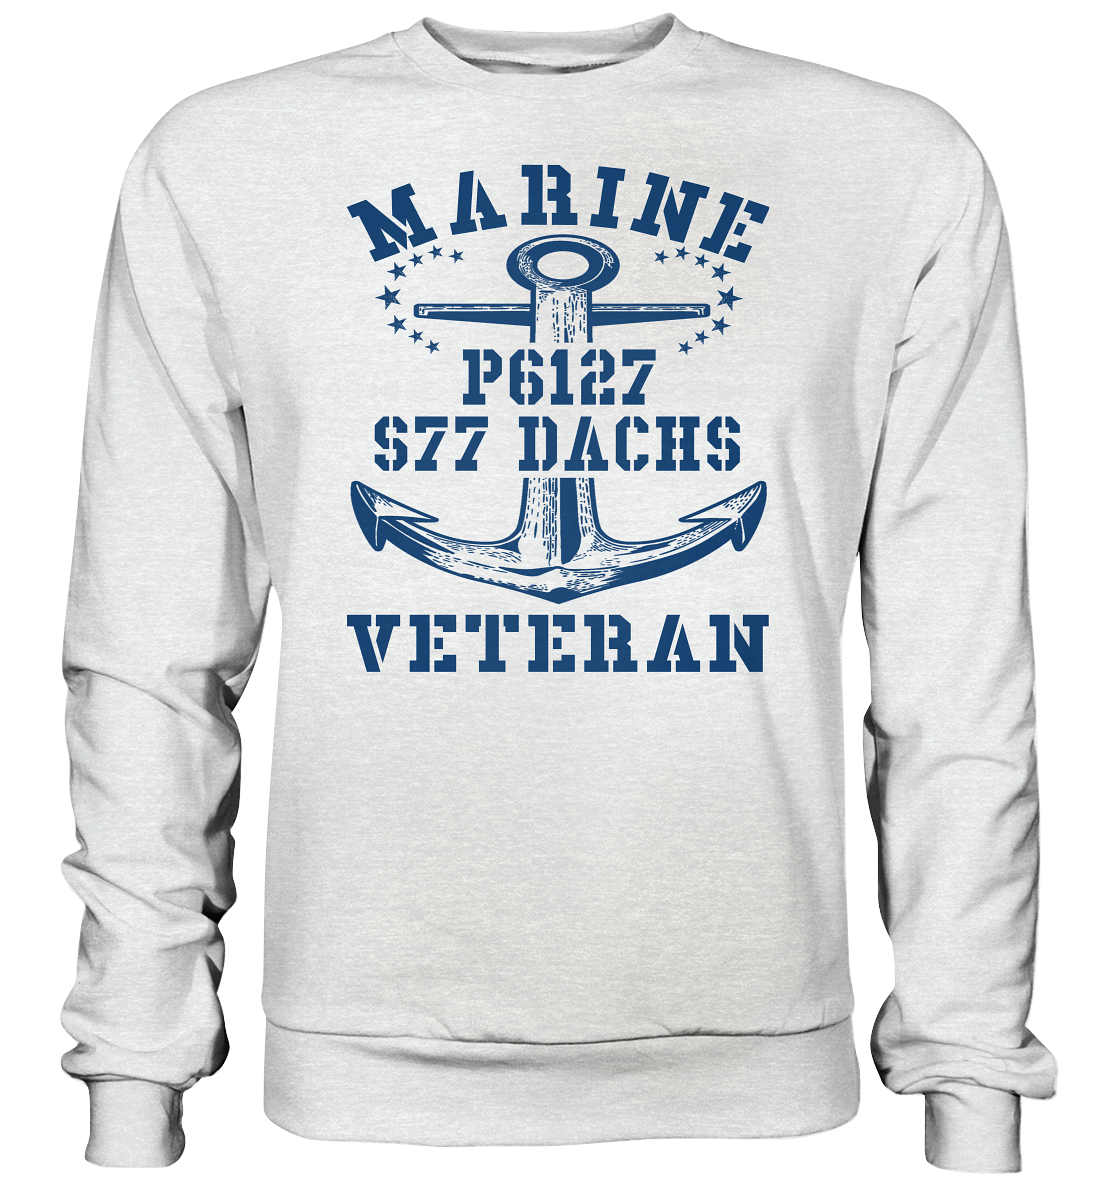 FK-Schnellboot P6127 DACHS Marine Veteran - Premium Sweatshirt